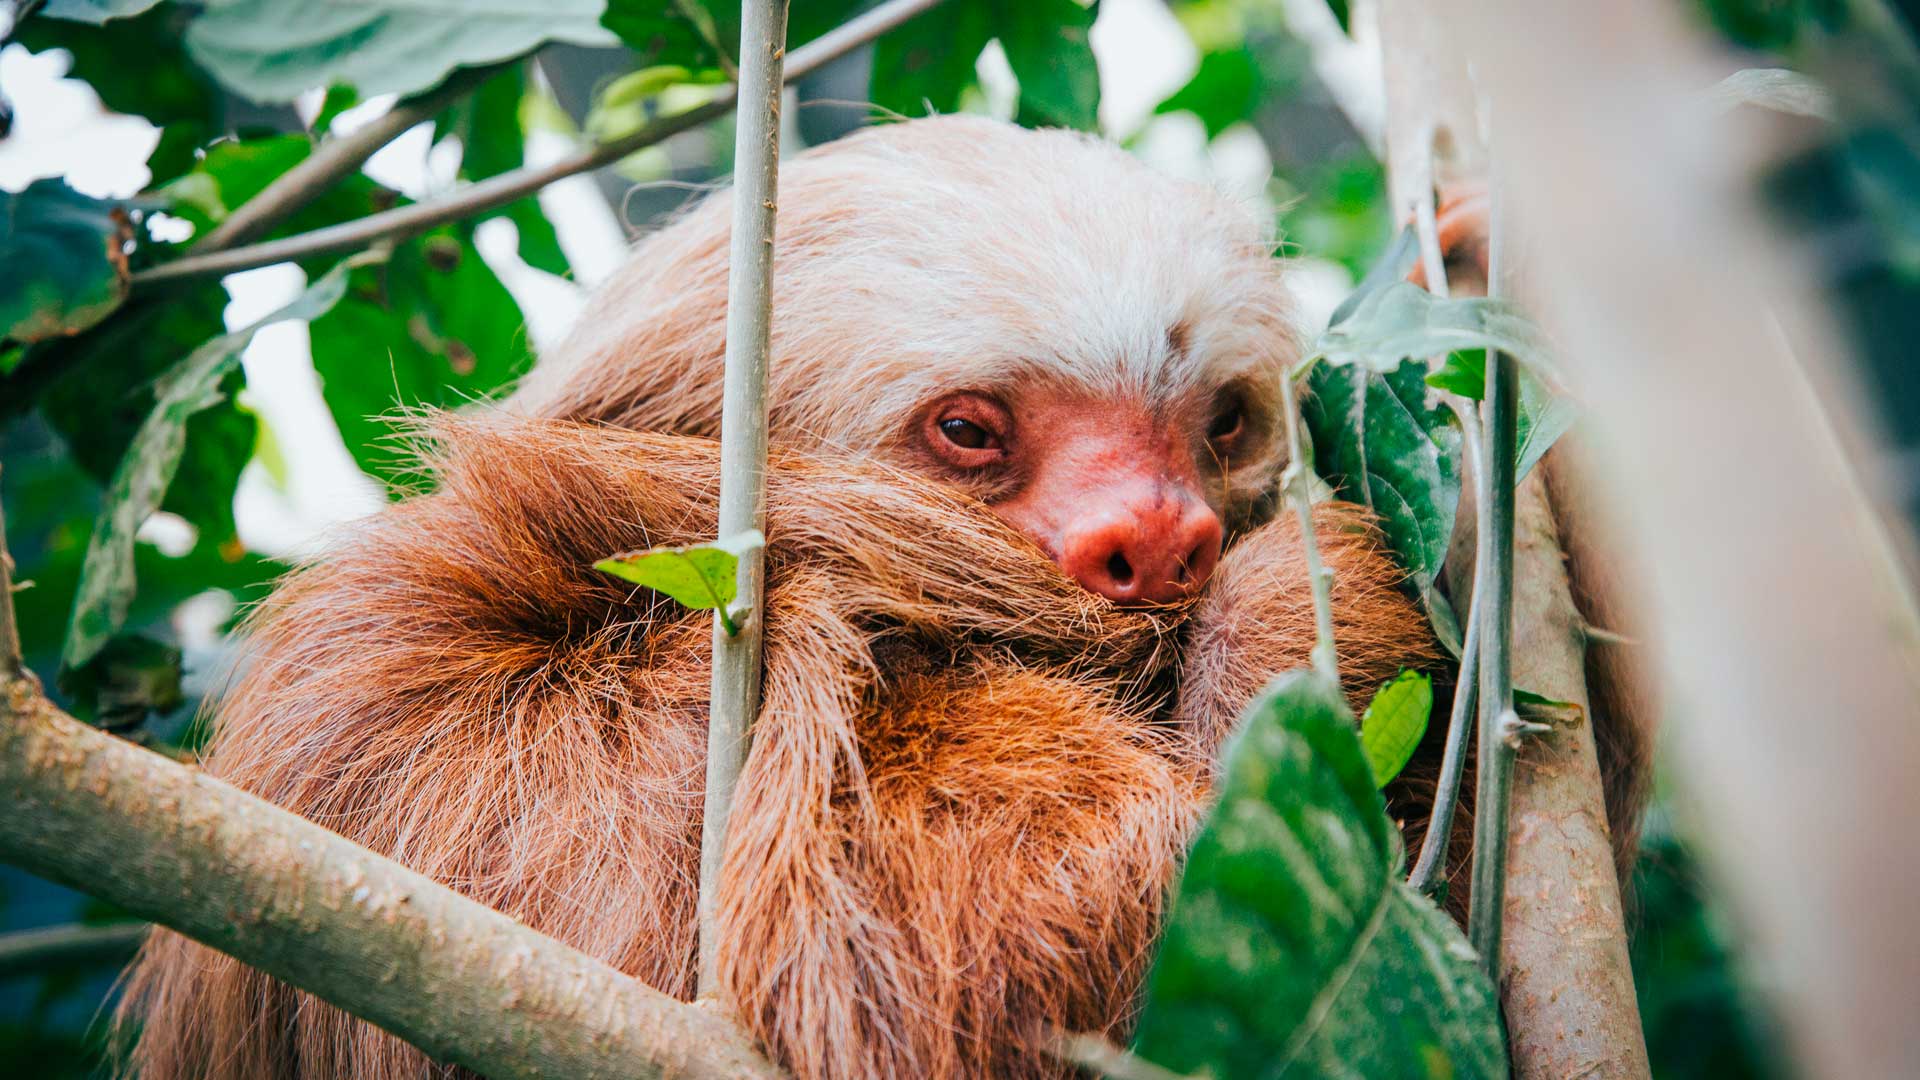 Selvatura Park: The Sloth Sanctuary!